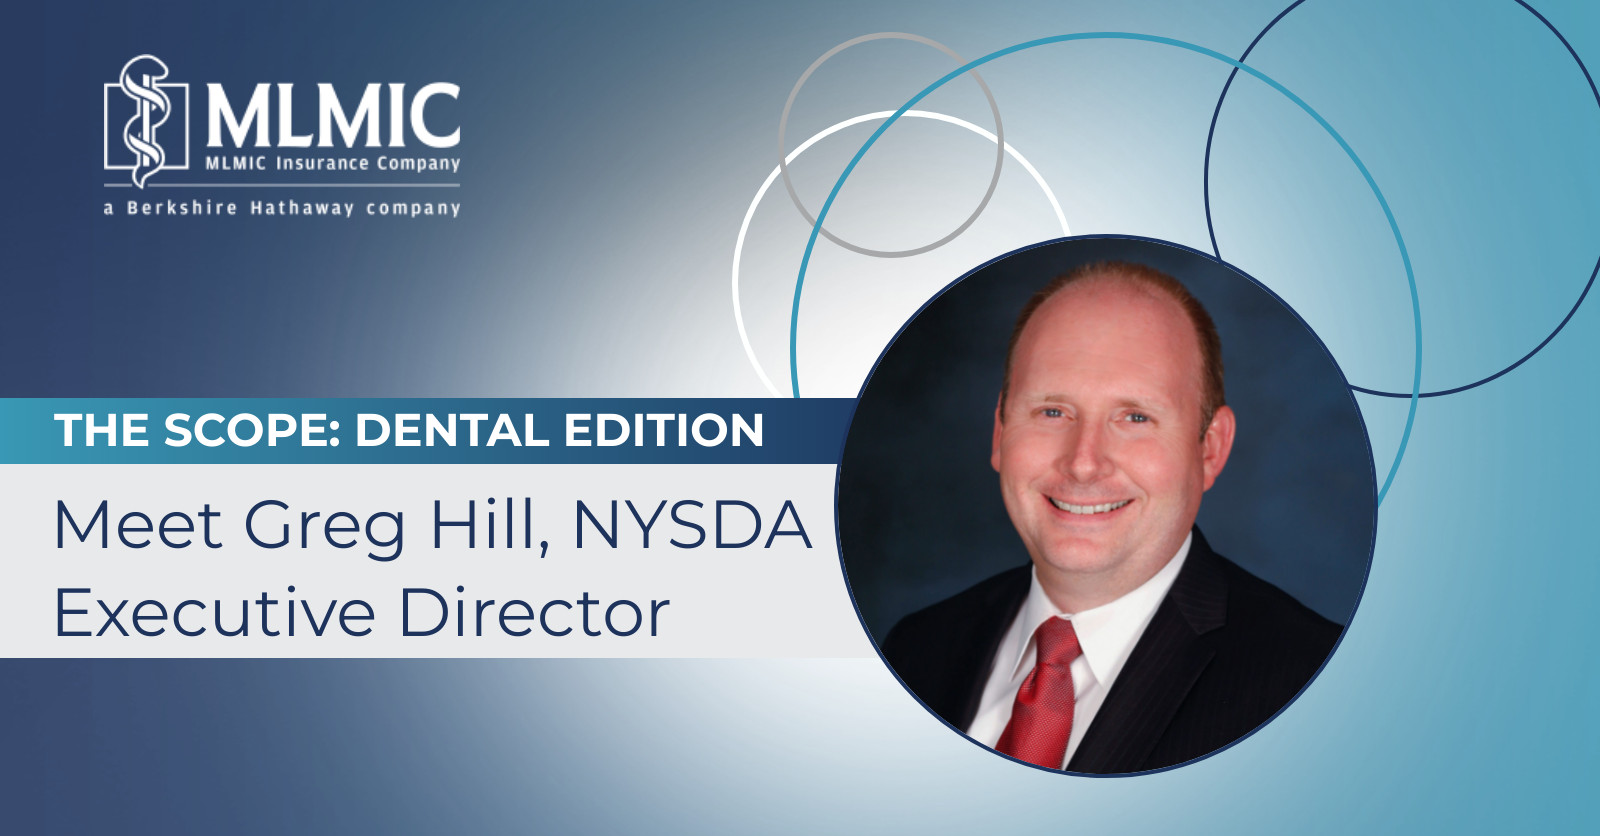 Greg Hill NYSDA Executive Director